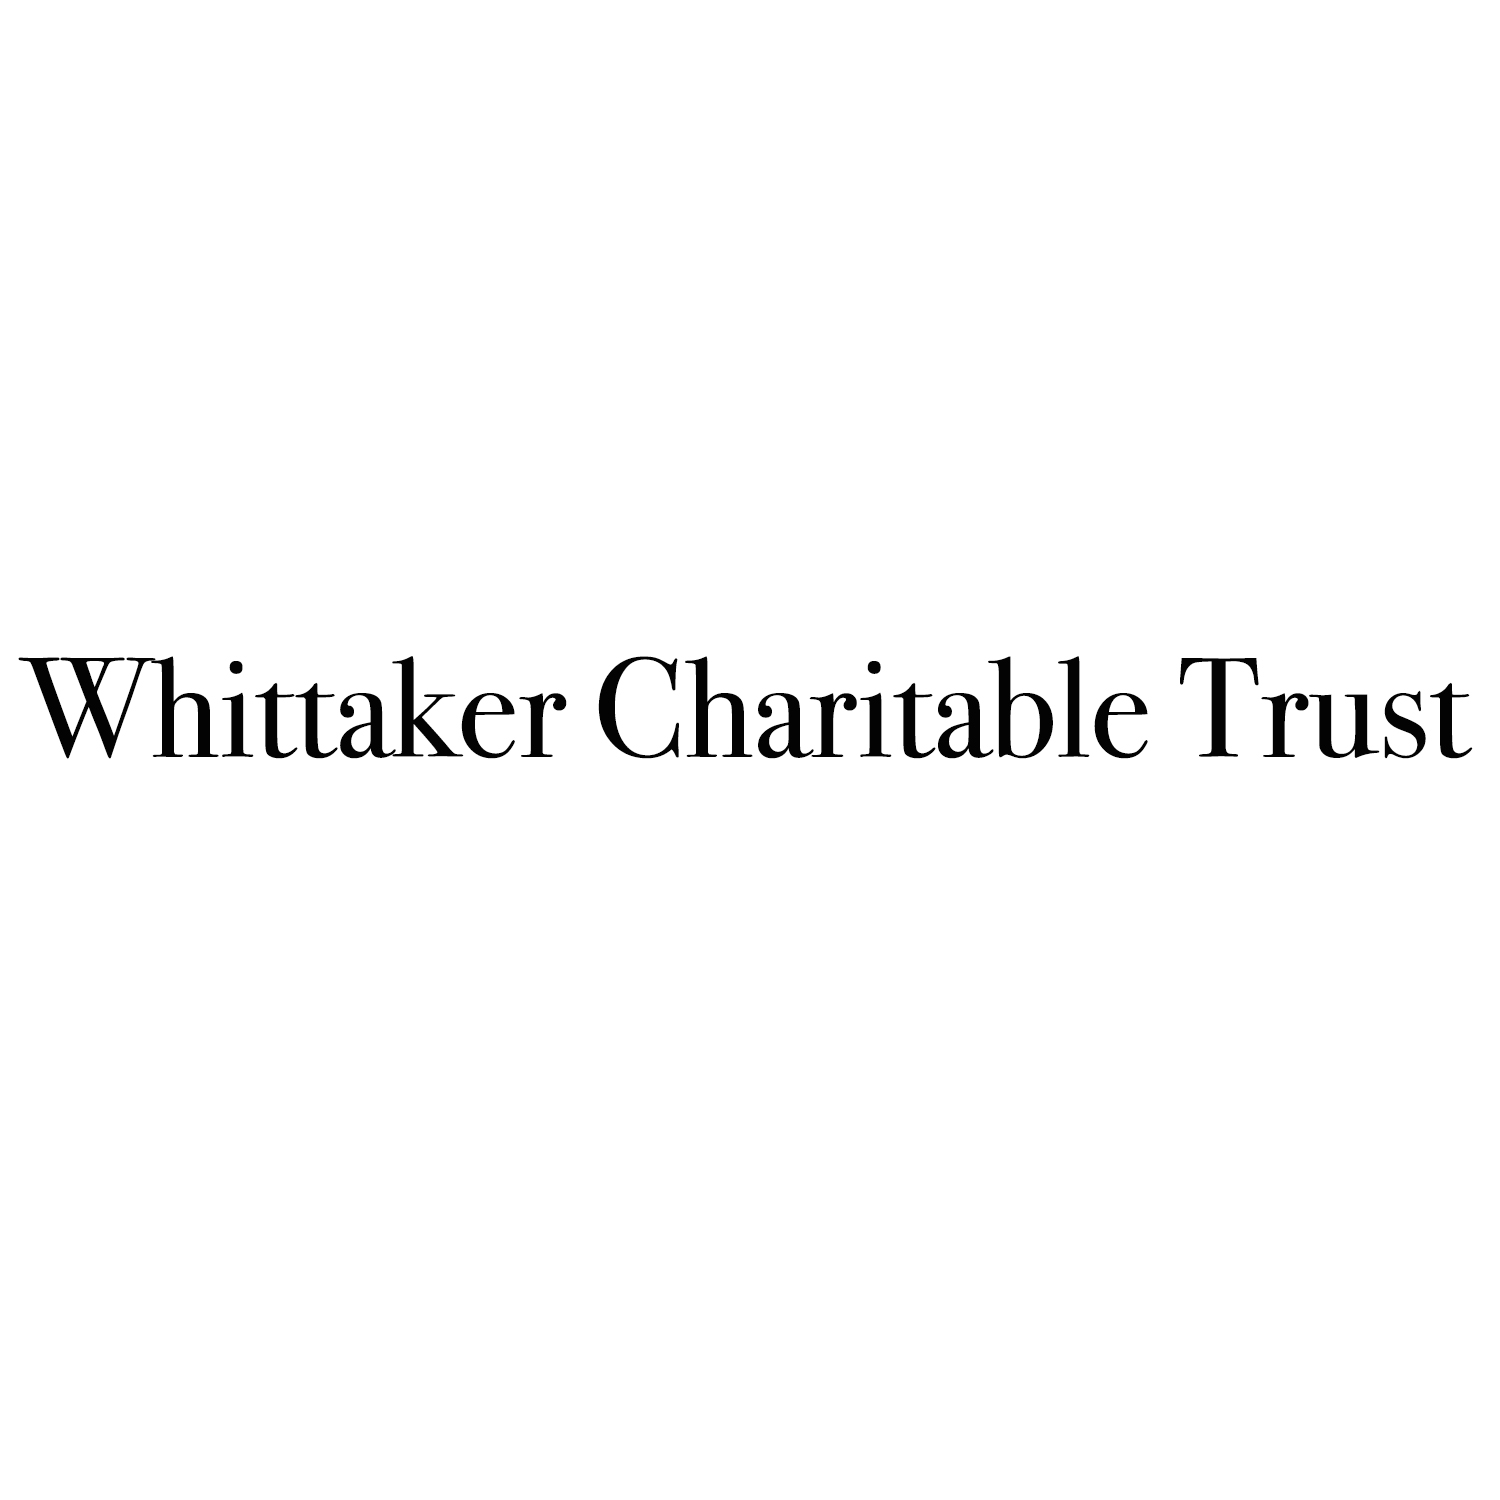 Whittaker Charitable Trust logo.jpg